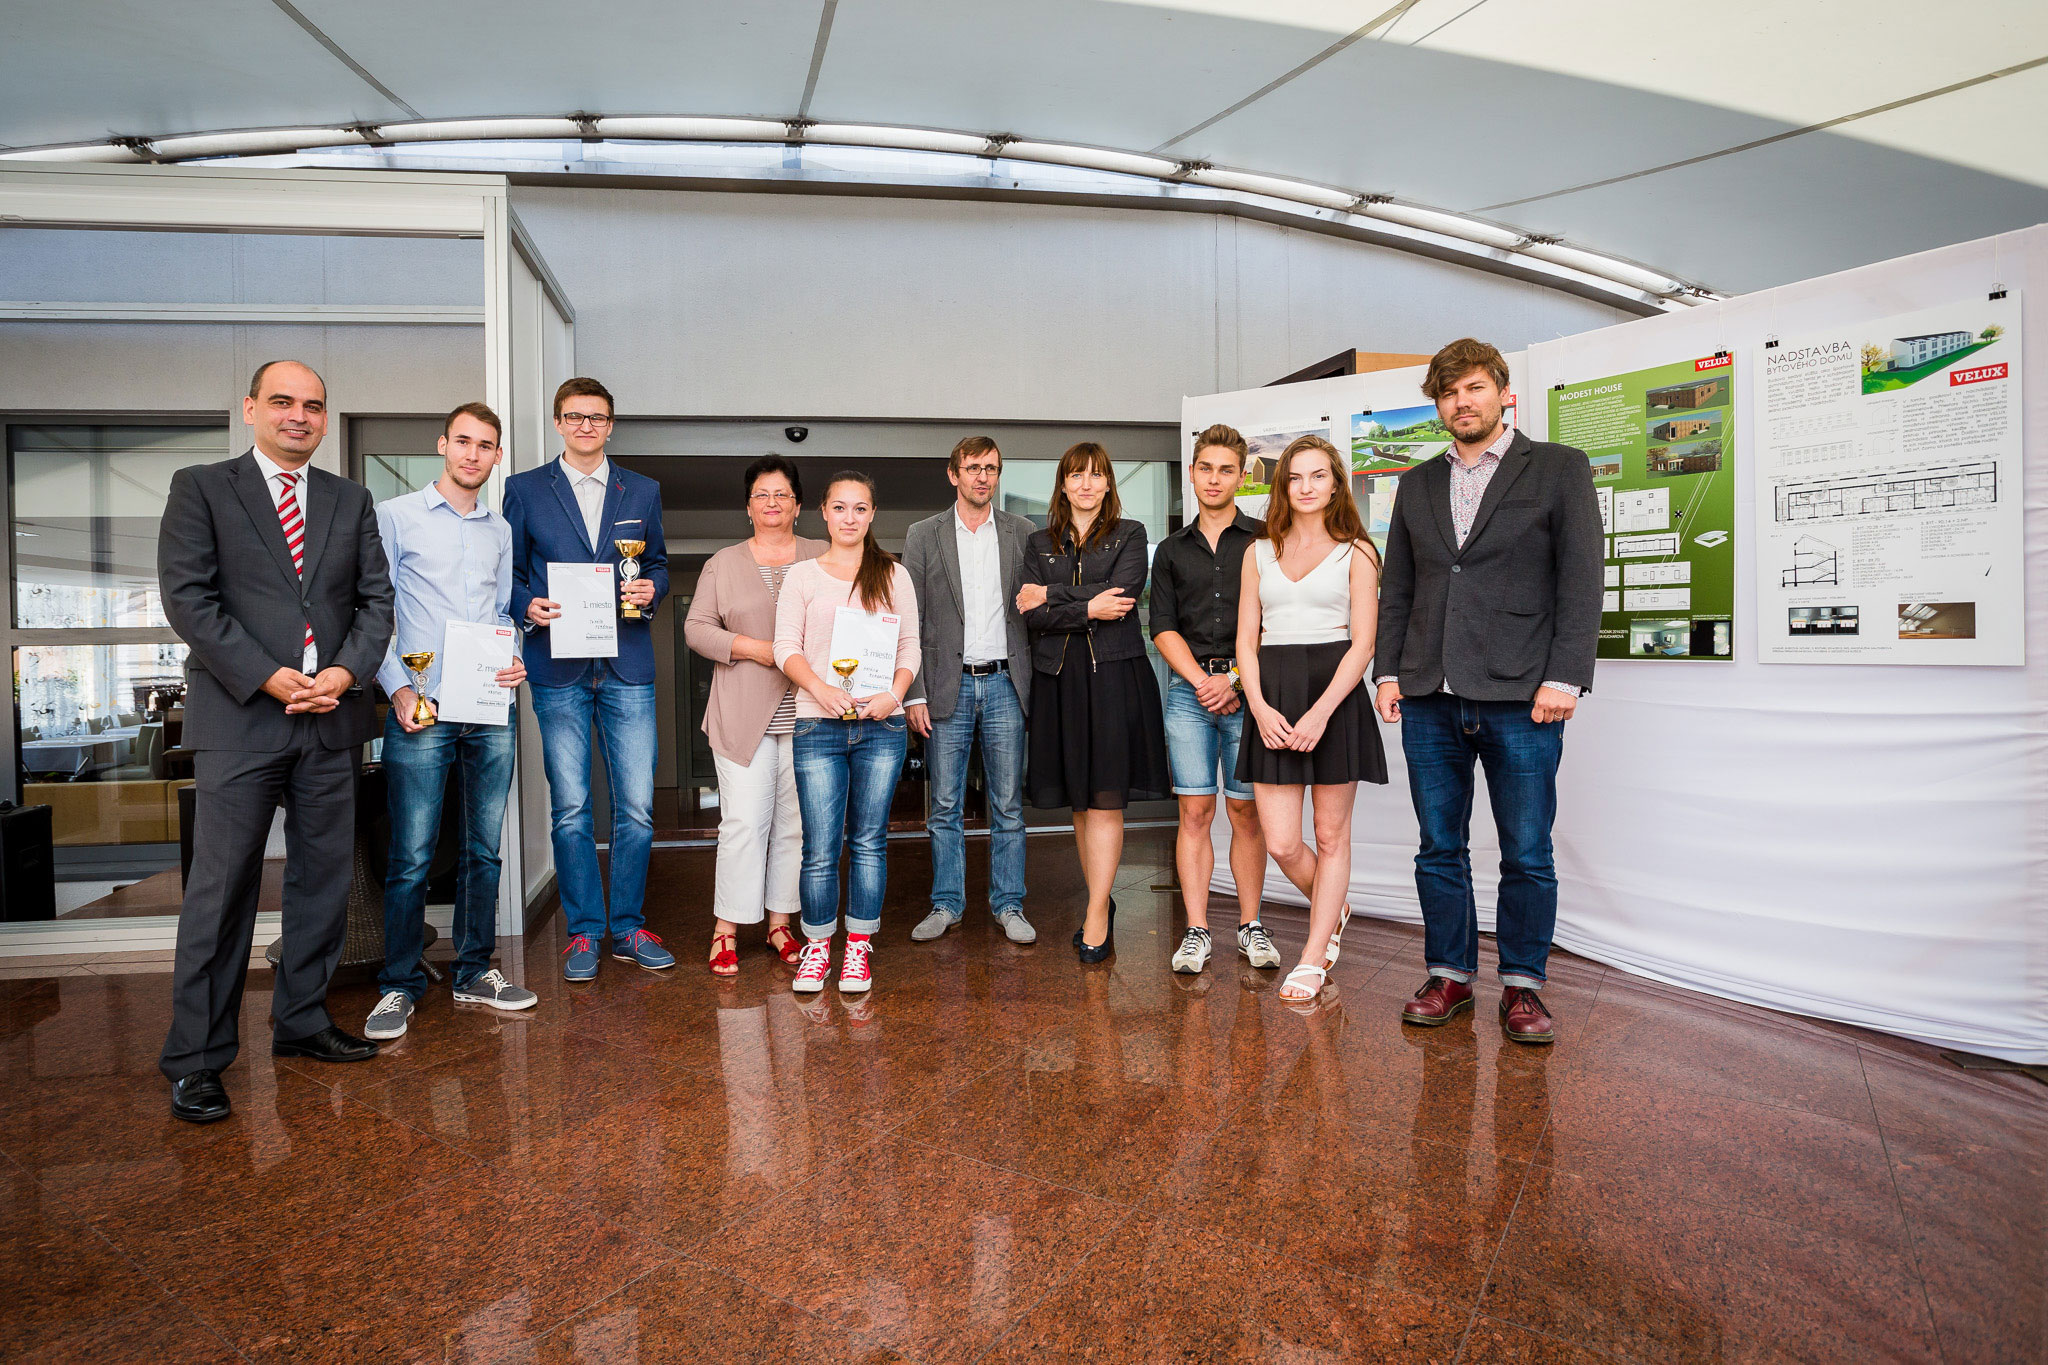 Slávnostné vyhlásenie výsledkov siedmeho ročníka súťaže Rodinný dom VELUX prebehlo v júni 2015 v Bratislave.